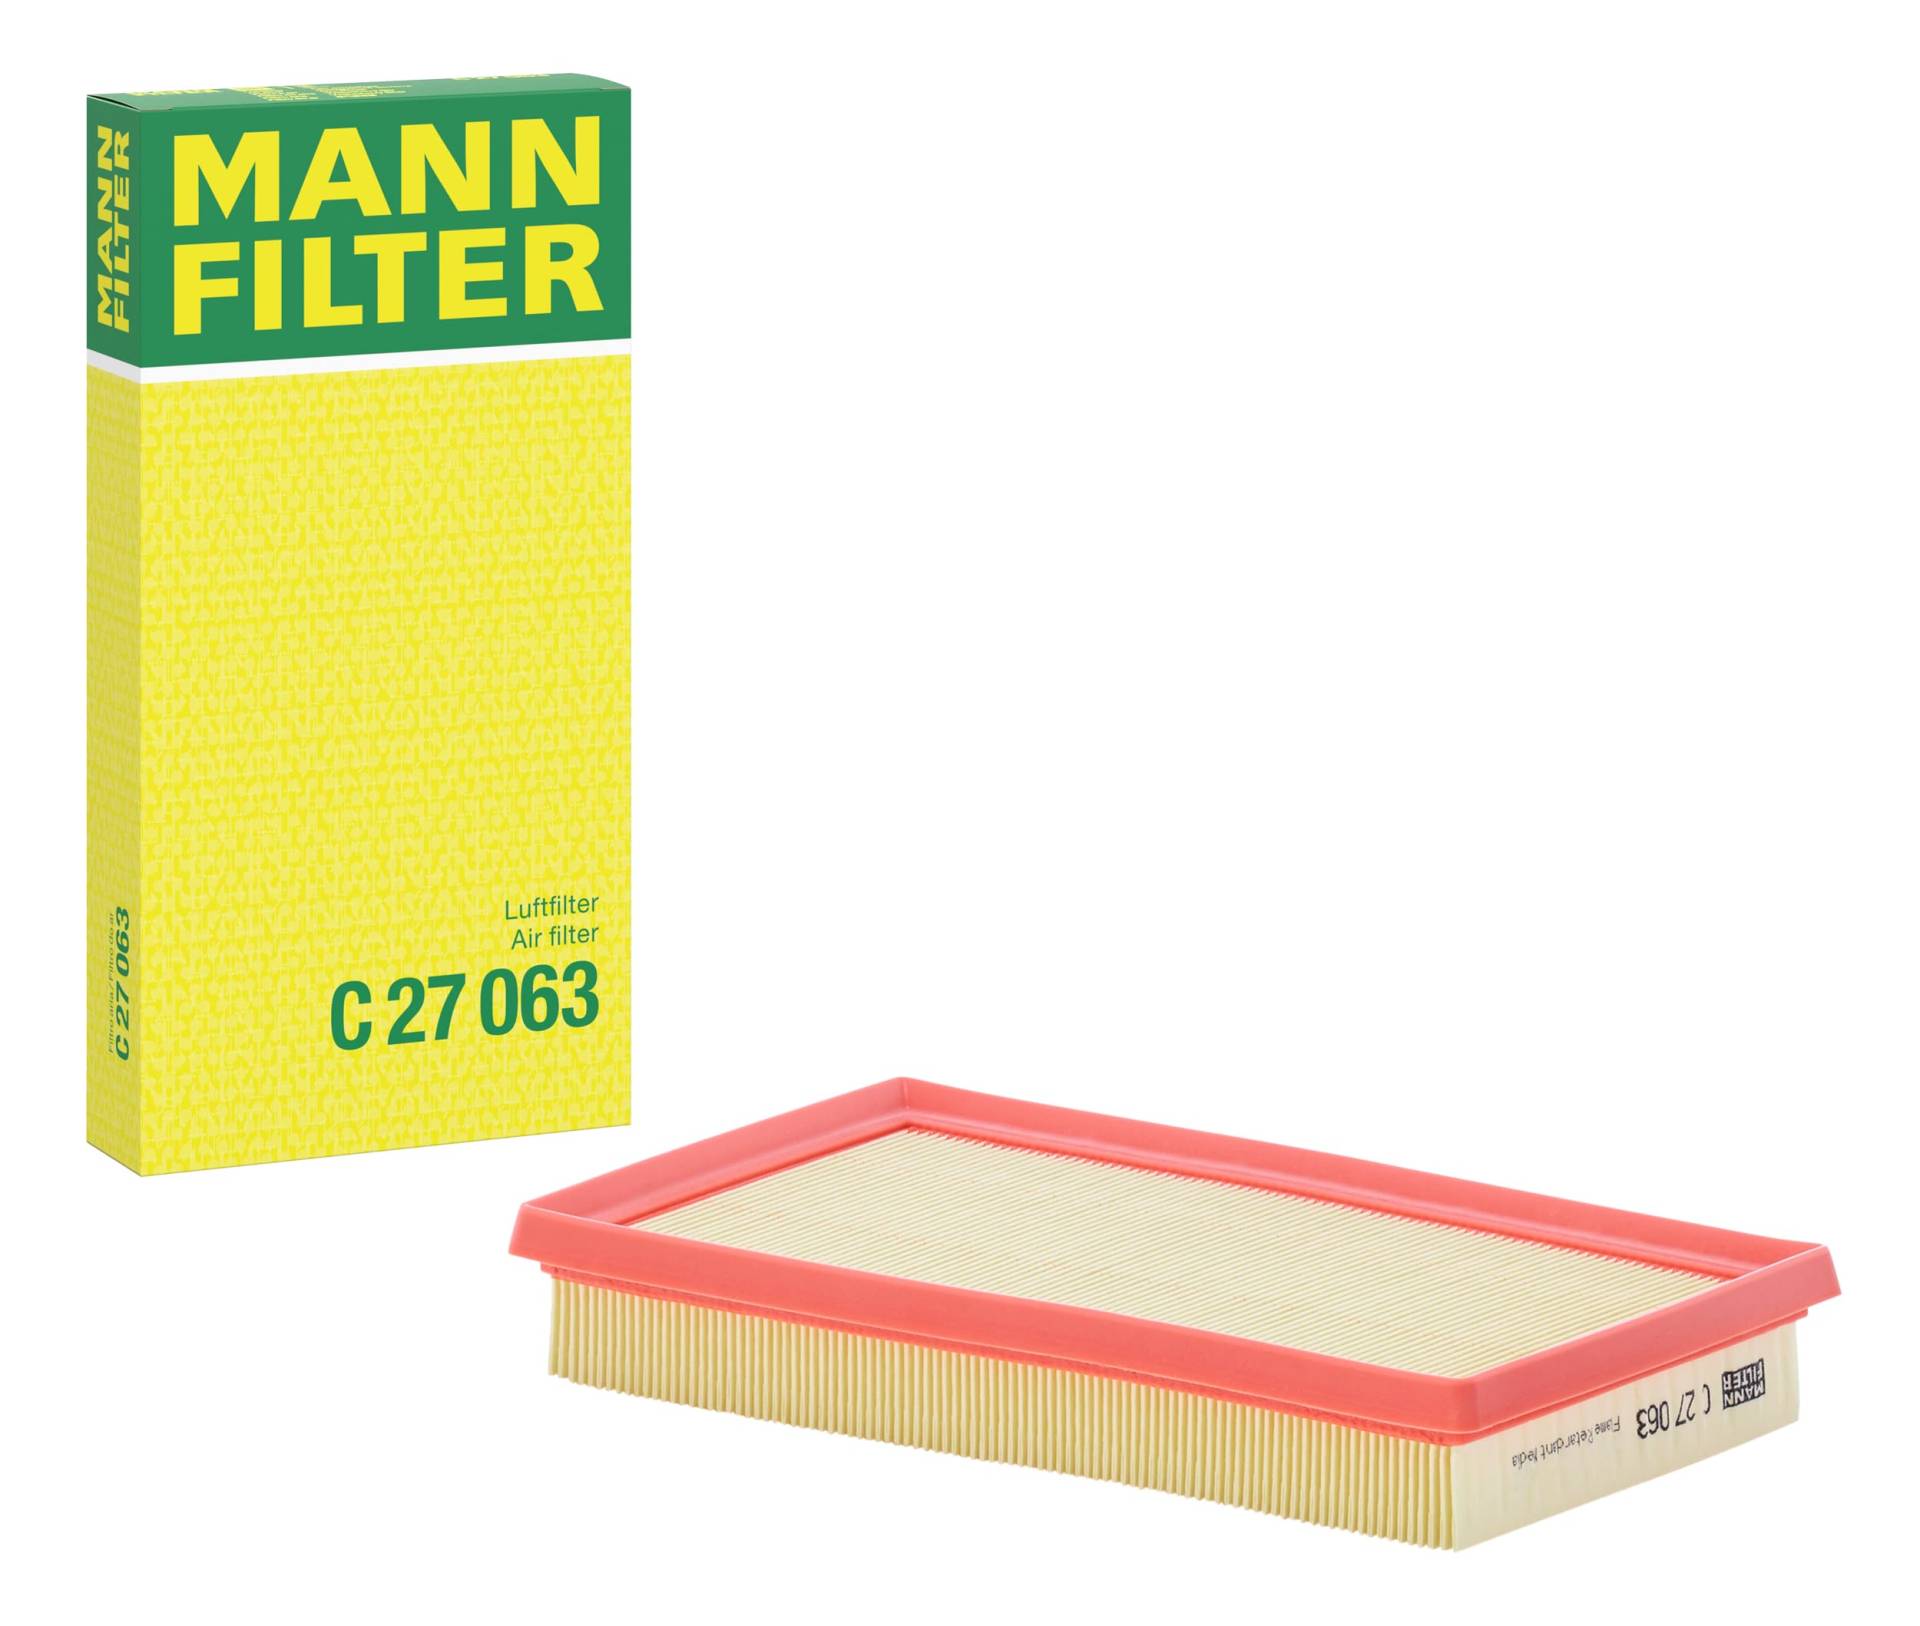 MANN-FILTER LUFTFILTER C 27 063 von MANN-FILTER